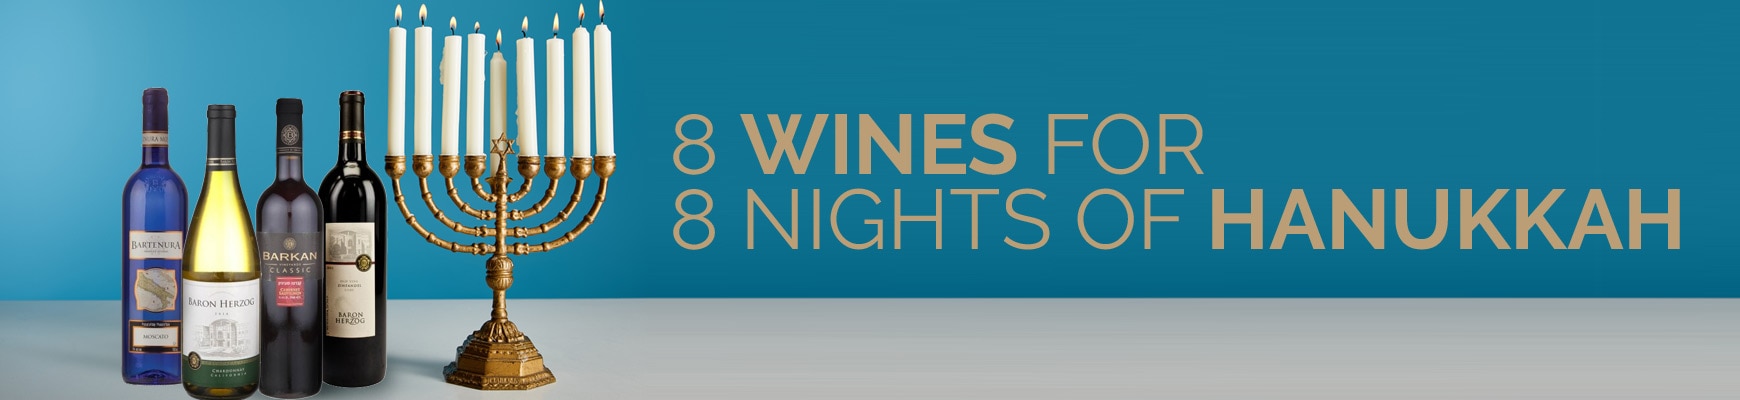 8 Wines for 8 Nights of Hanukkah